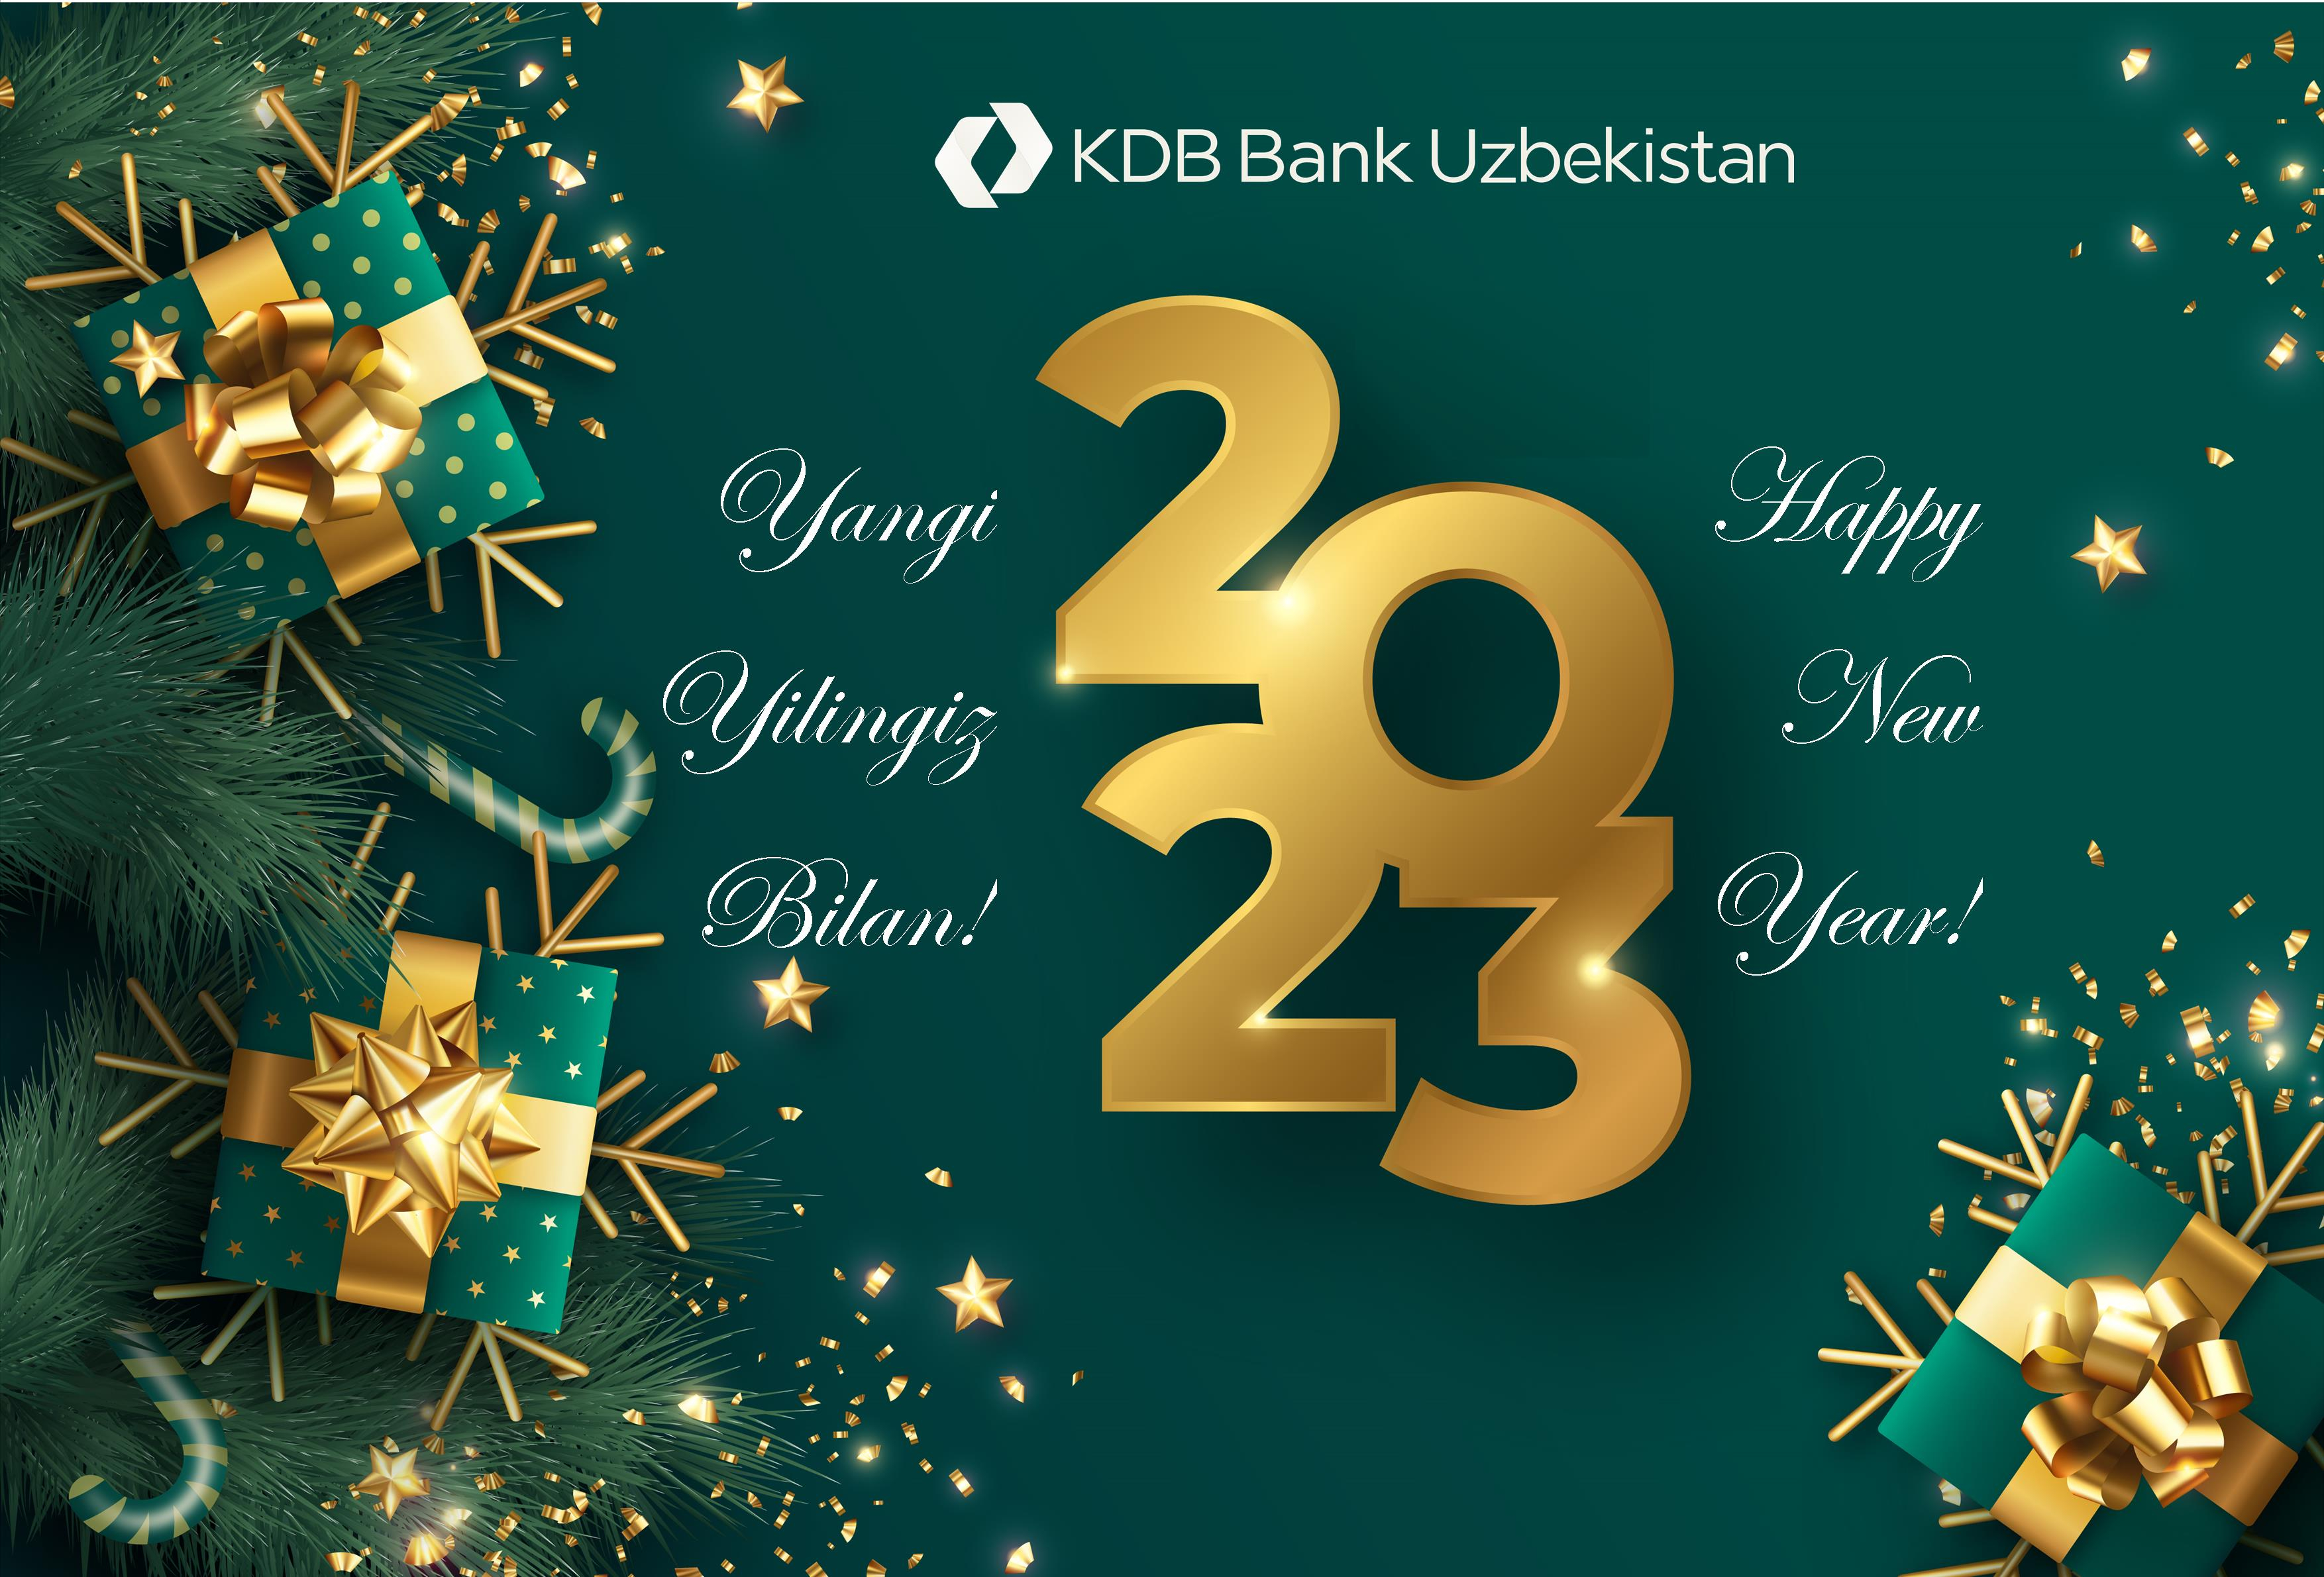 АО “КДБ Банк Узбекистан” поздравляет вас с наступающим Новым Годом!